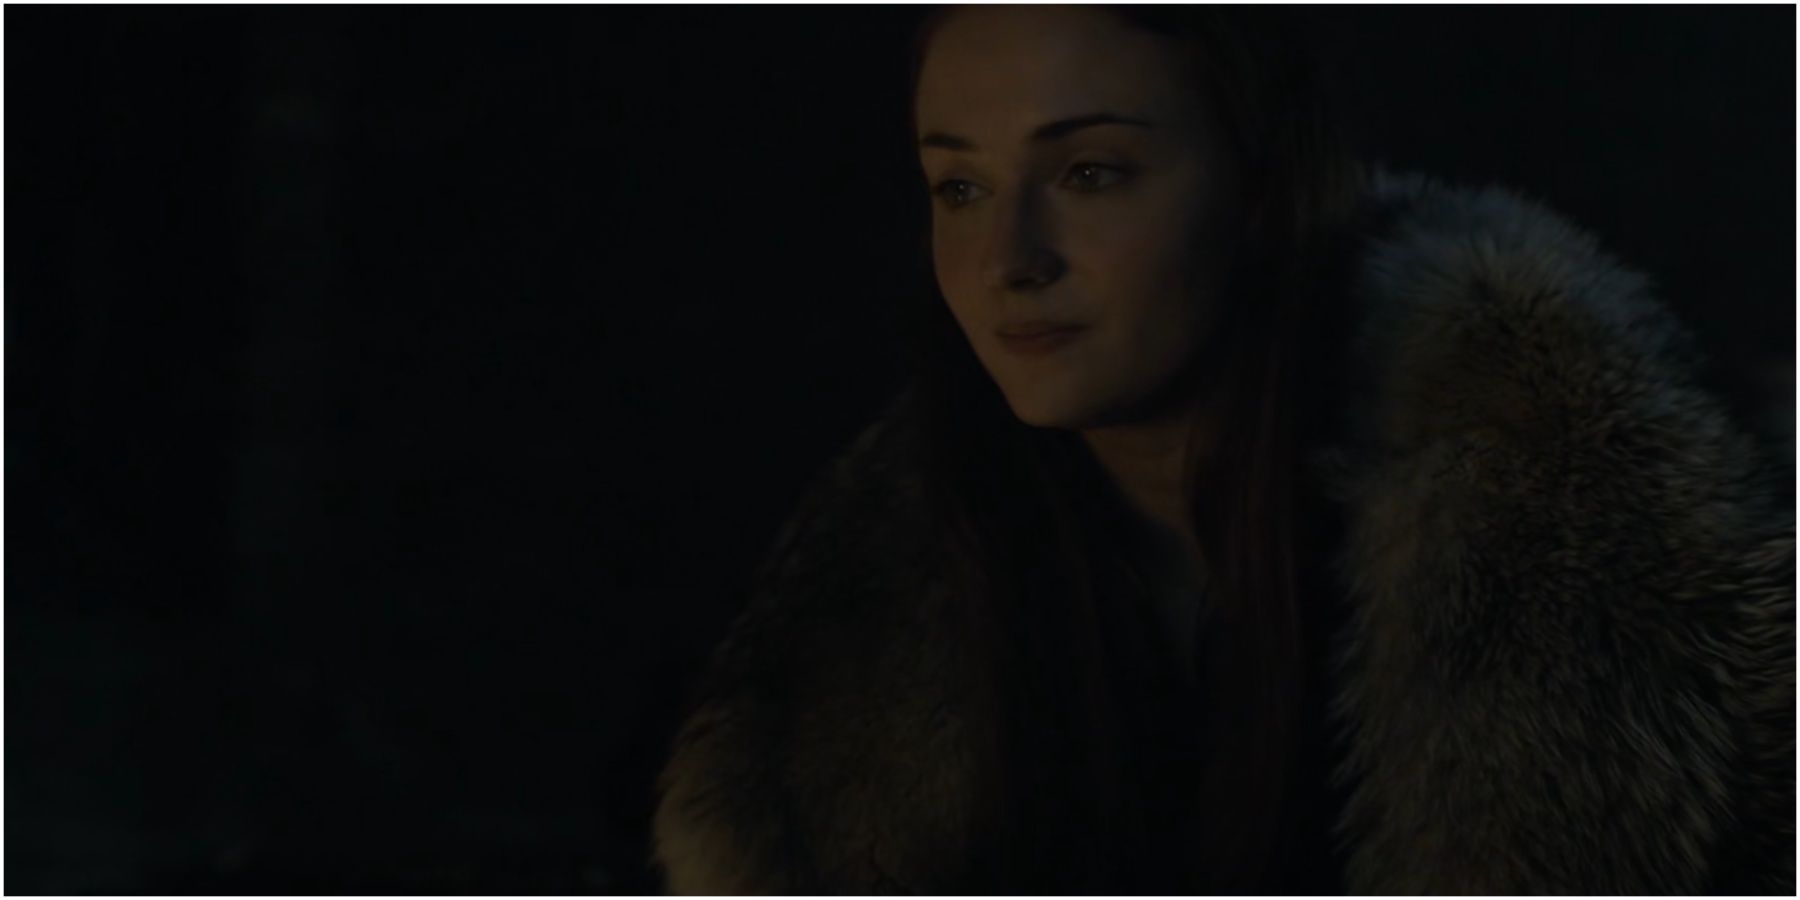 Sansa Stark in Game of Thrones.